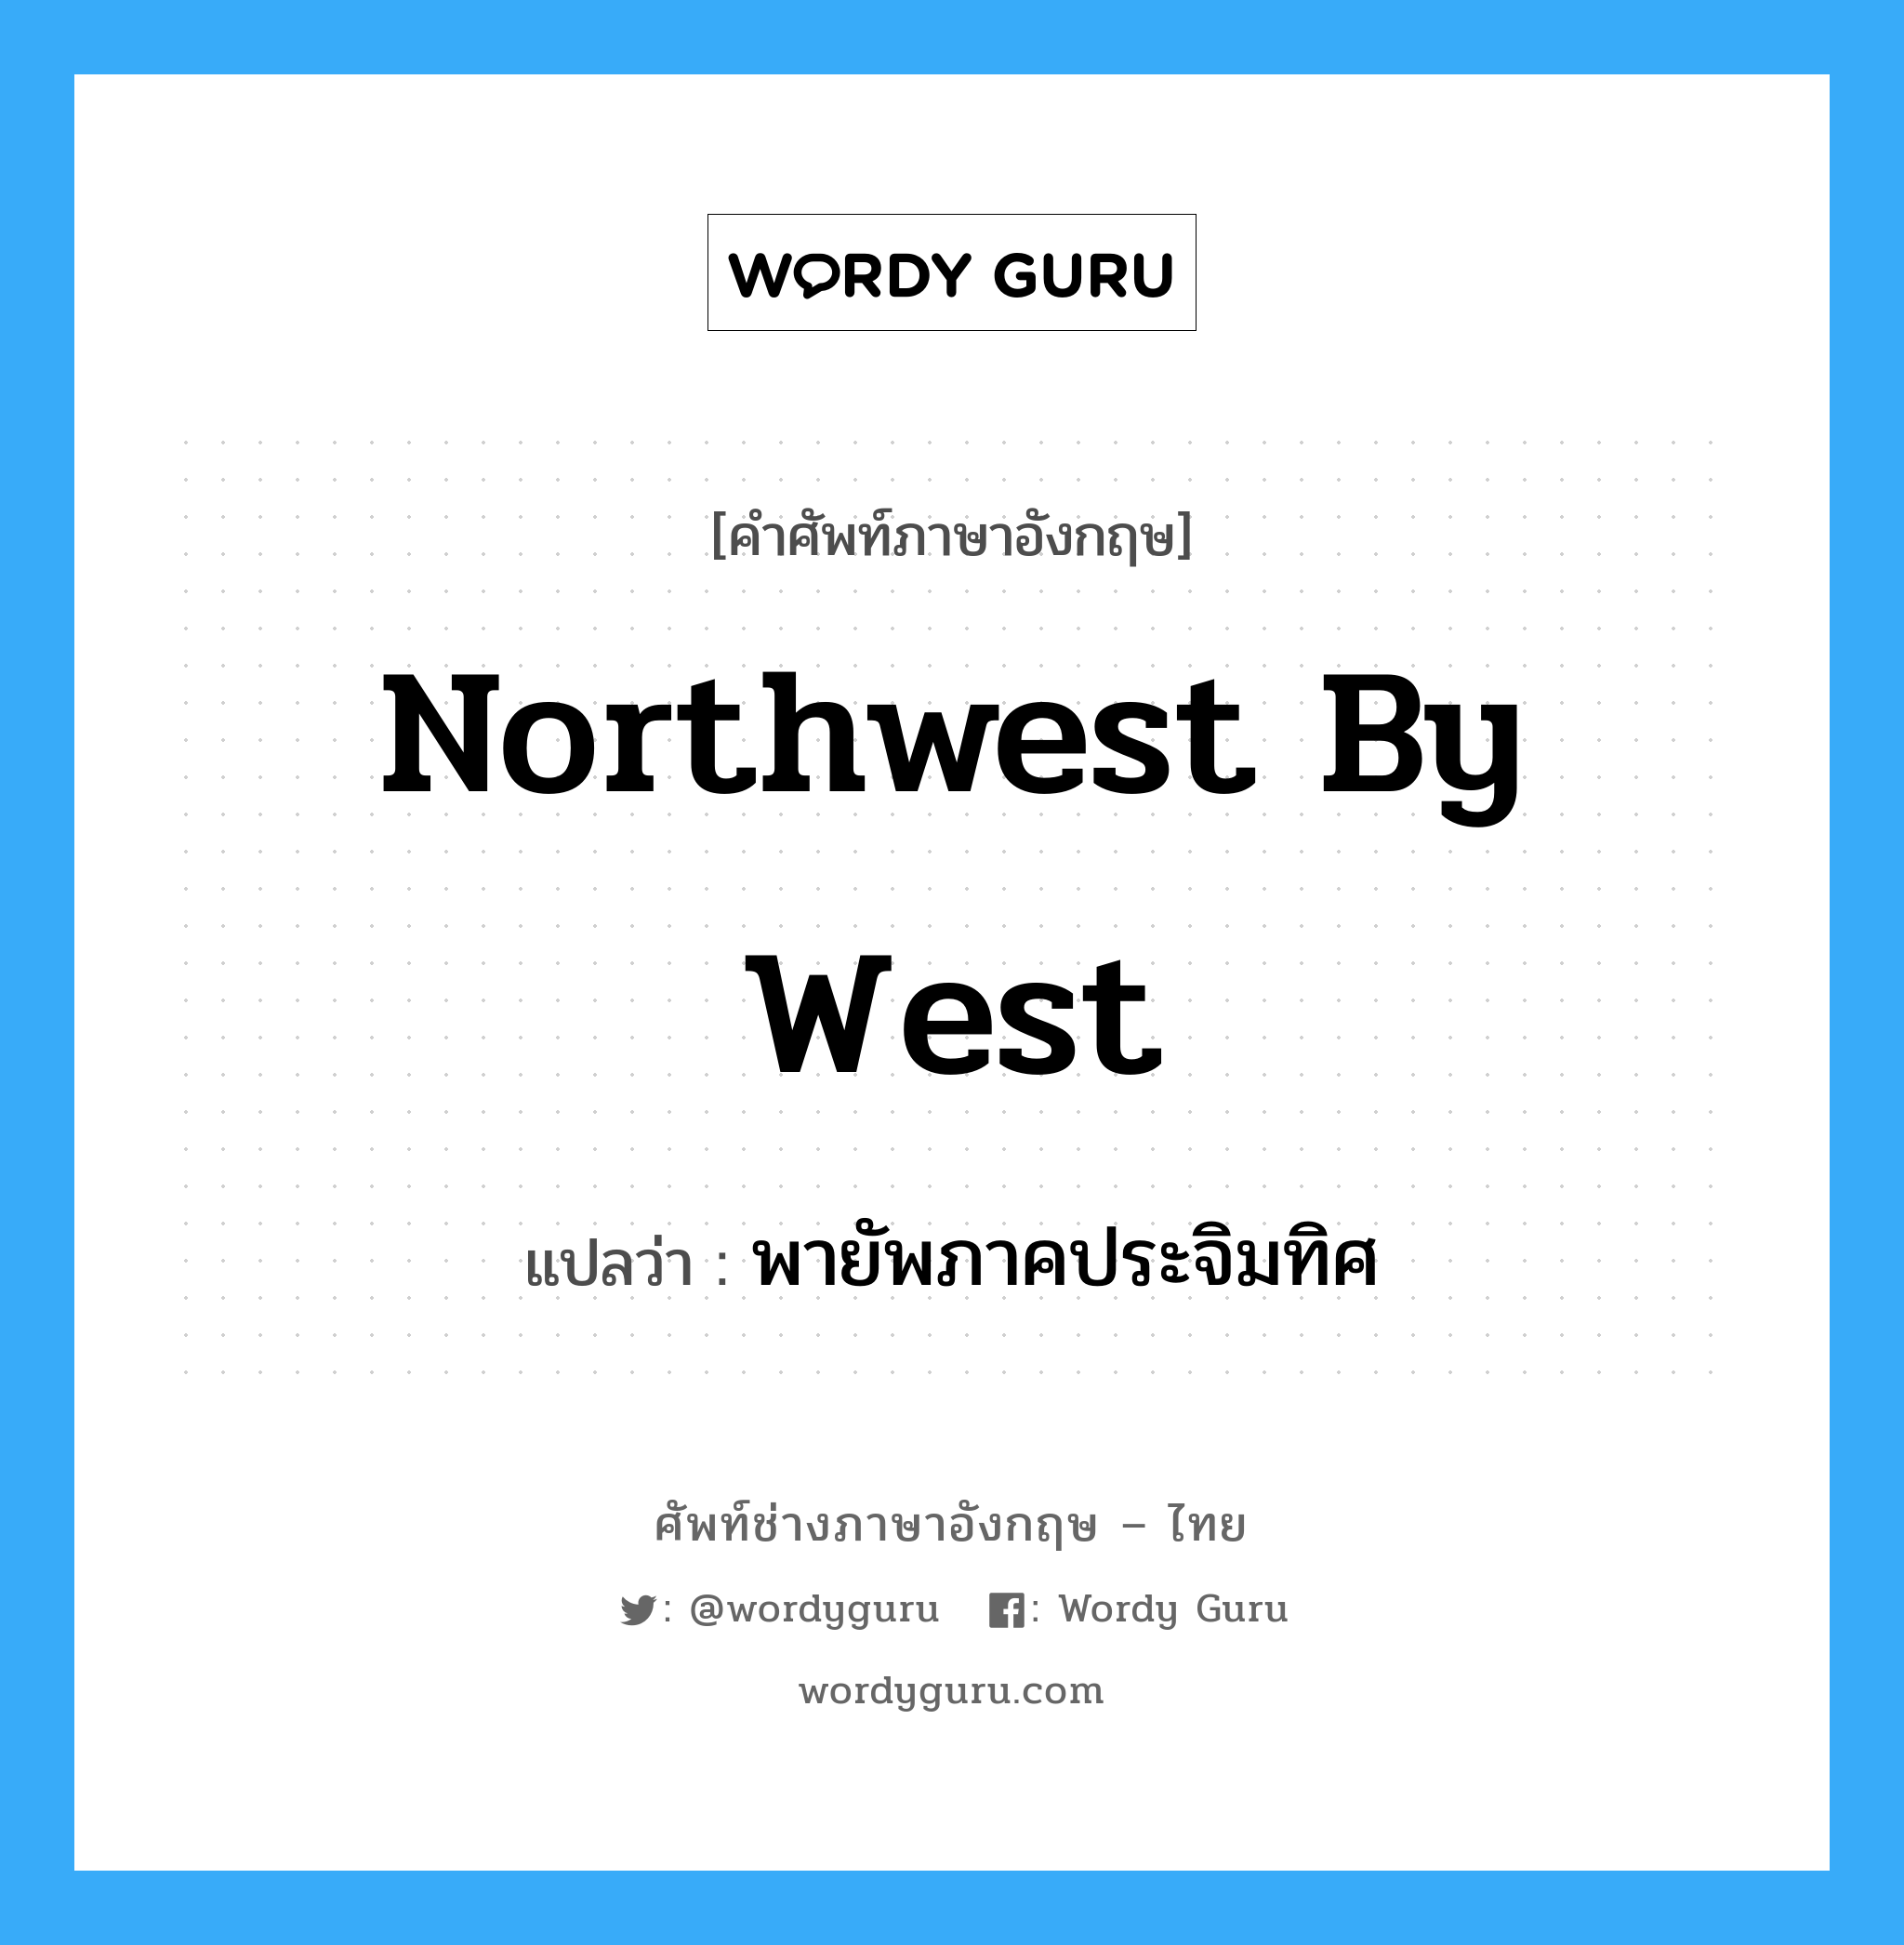 northwest by west แปลว่า?, คำศัพท์ช่างภาษาอังกฤษ - ไทย northwest by west คำศัพท์ภาษาอังกฤษ northwest by west แปลว่า พายัพภาคประจิมทิศ